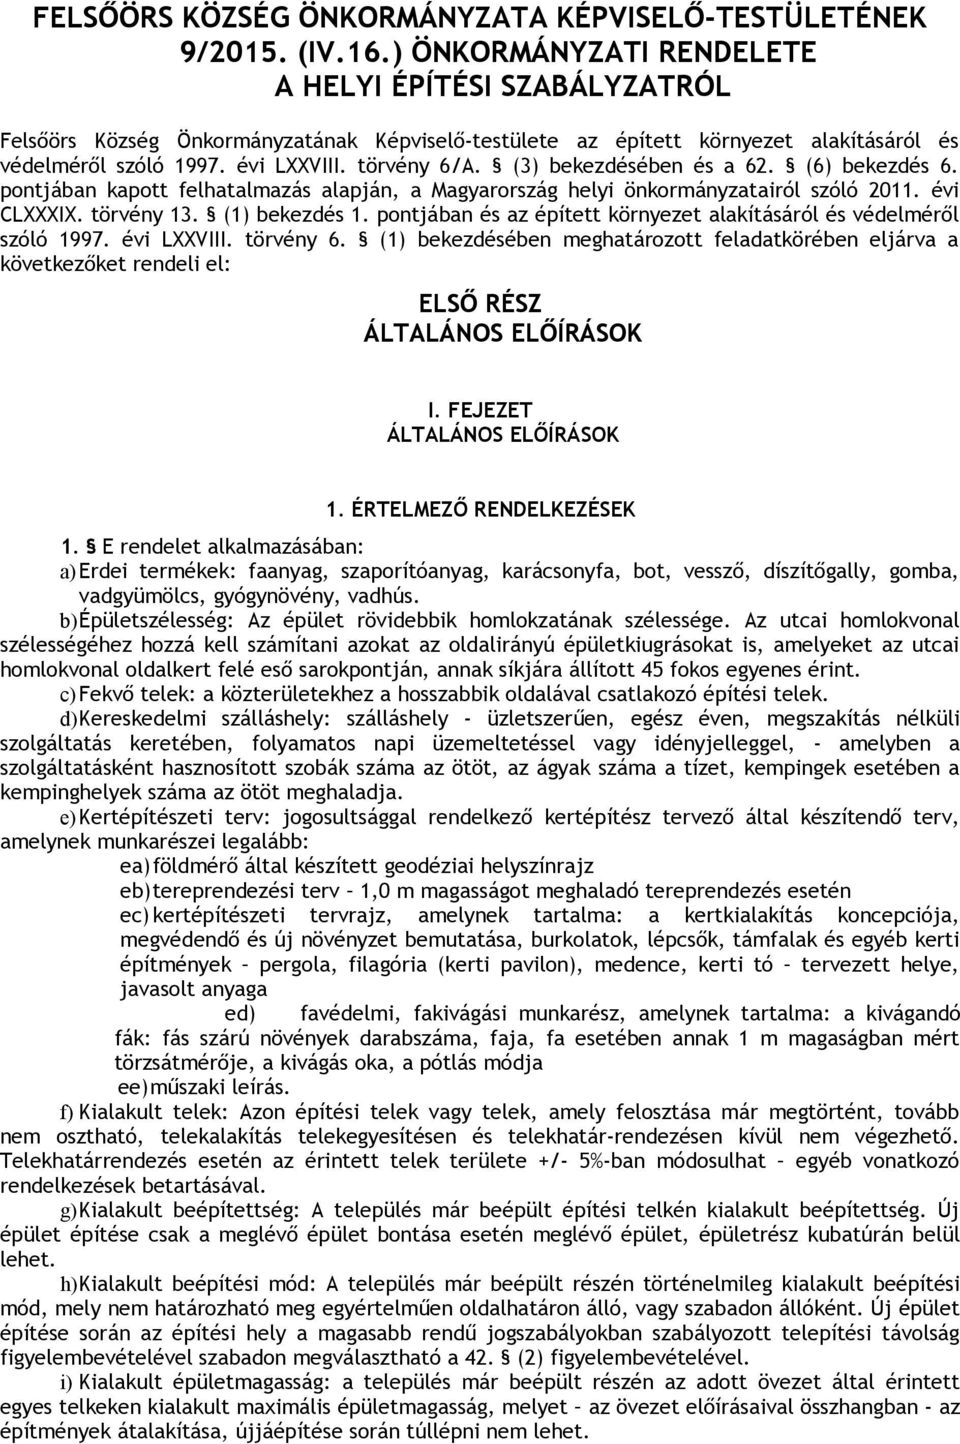 (3) bekezdésében és a 62. (6) bekezdés 6. pontjában kapott felhatalmazás alapján, a Magyarország helyi önkormányzatairól szóló 2011. évi CLXXXIX. törvény 13. (1) bekezdés 1.